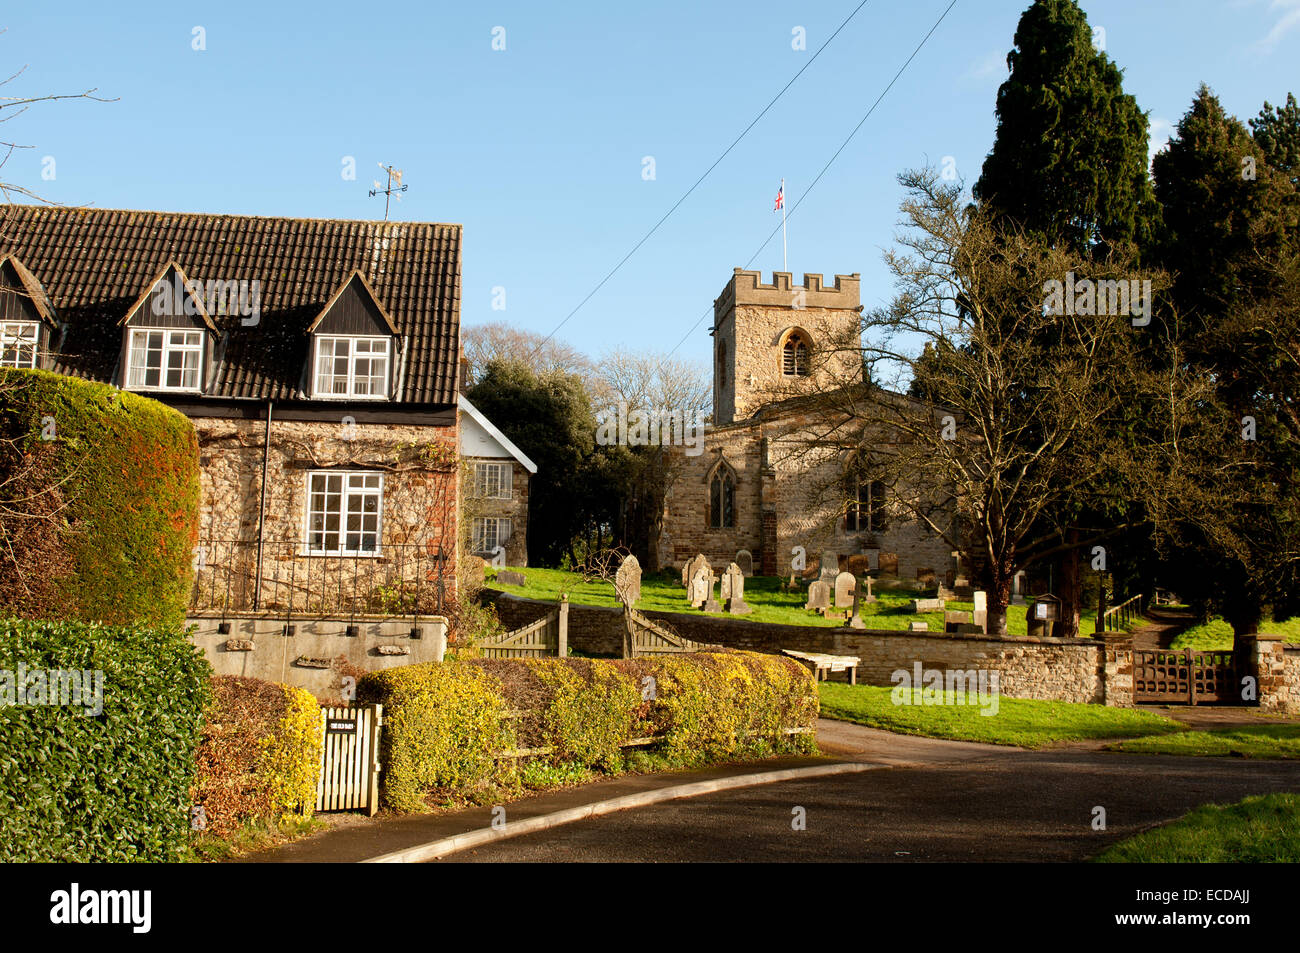 Weedon Lois village, Northamptonshire, England, UK Stock Photo